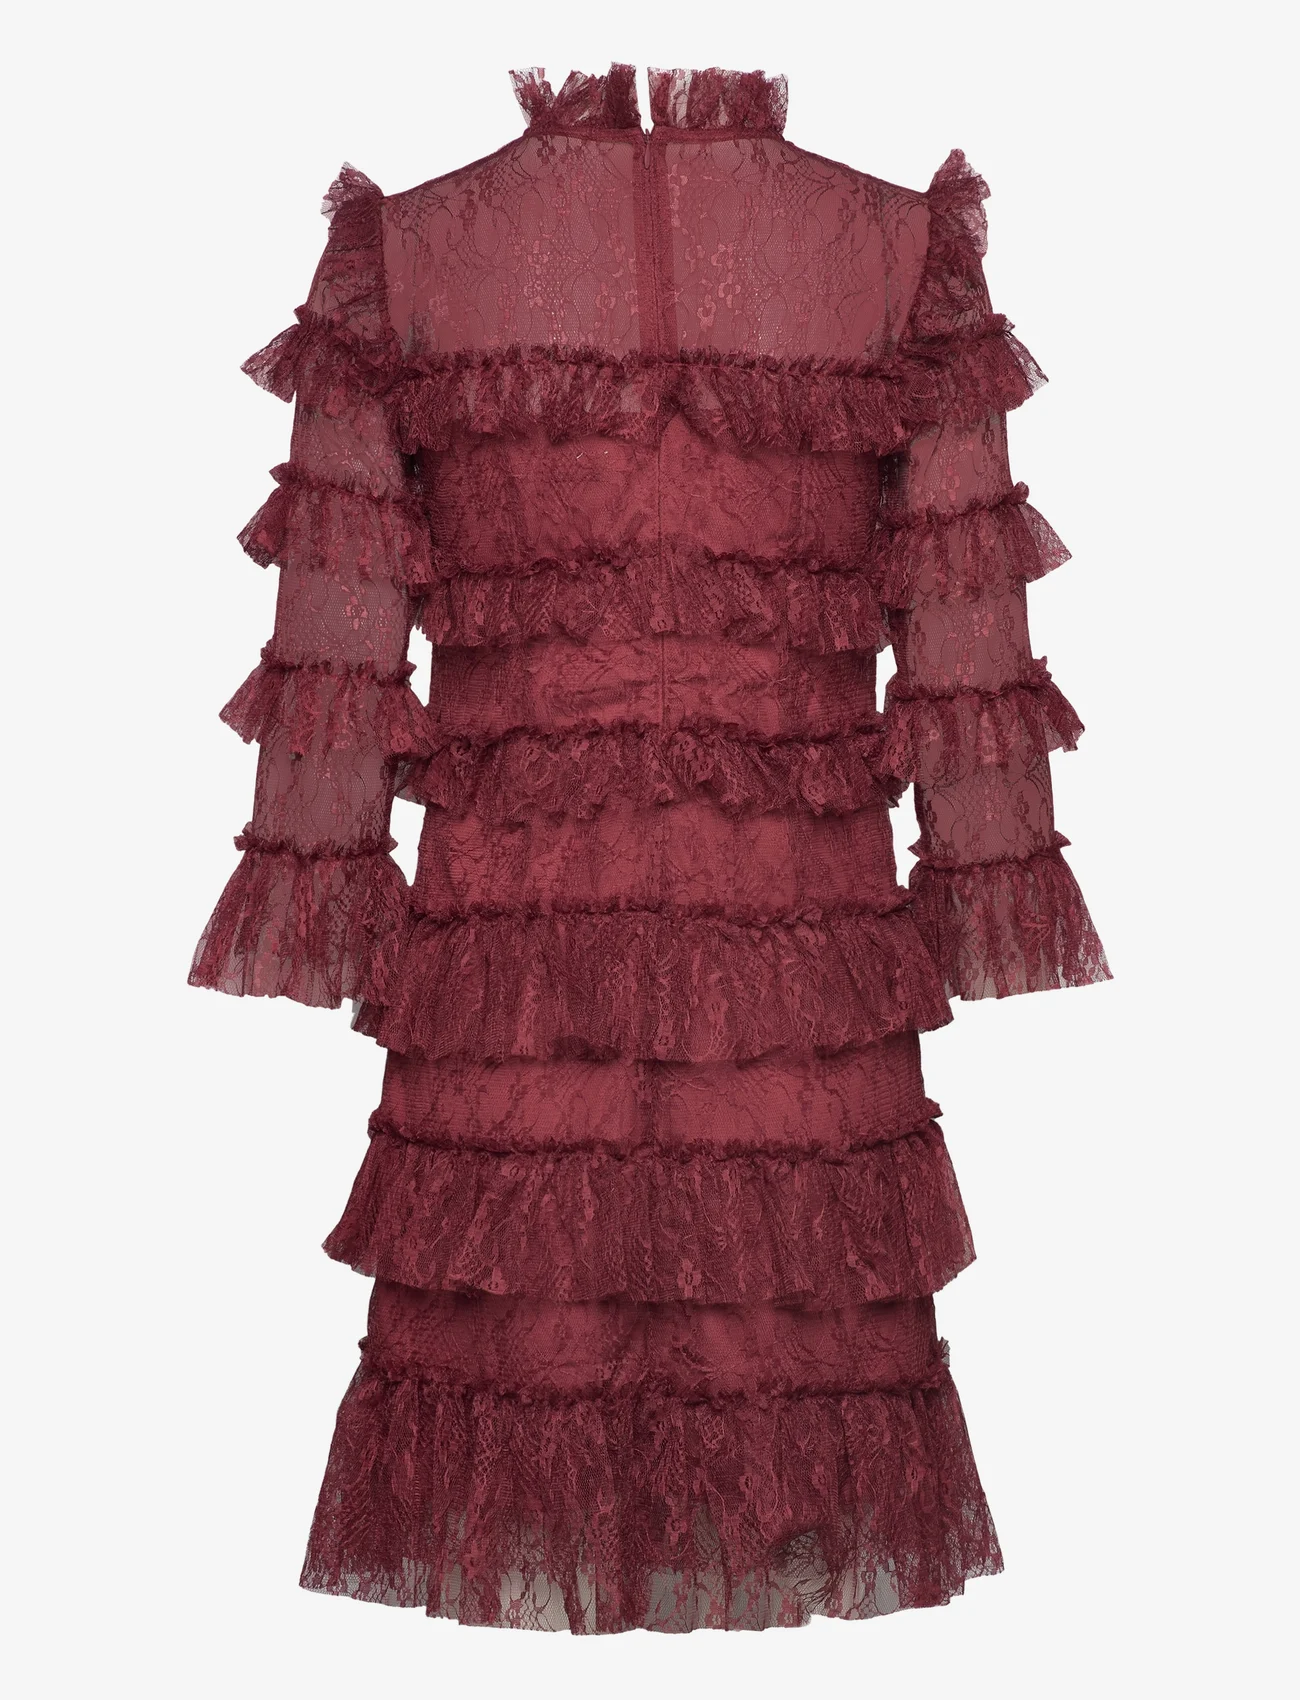 Malina - Carmine frill mini lace dress - odzież imprezowa w cenach outletowych - wine - 1